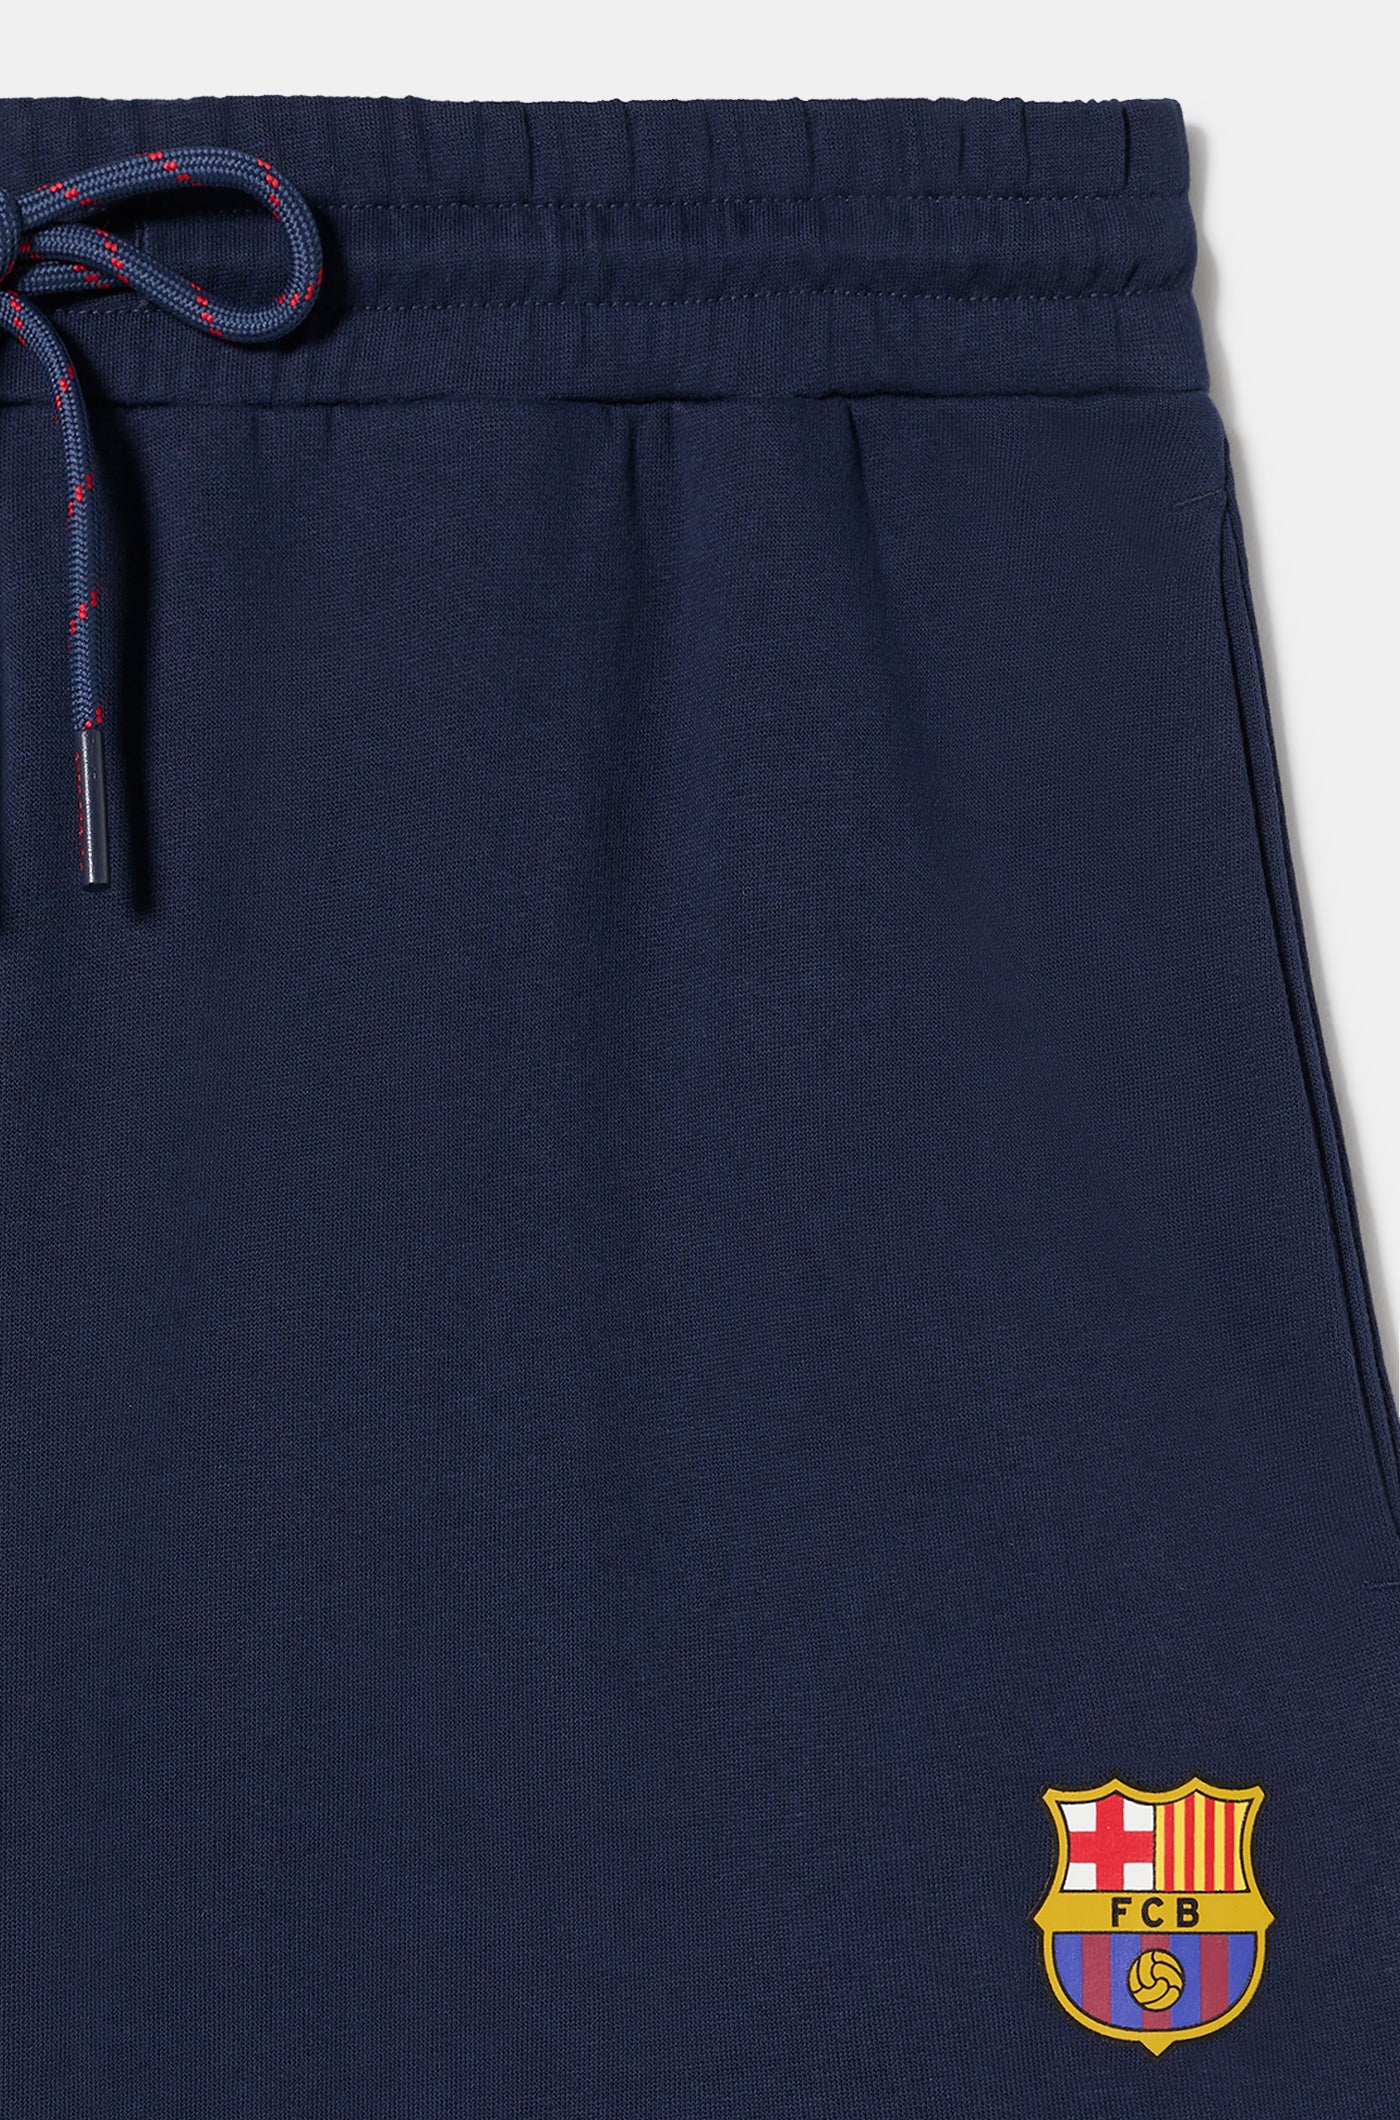 Pantalon de Survêtement Bleu Marine avec Emblème Barça 